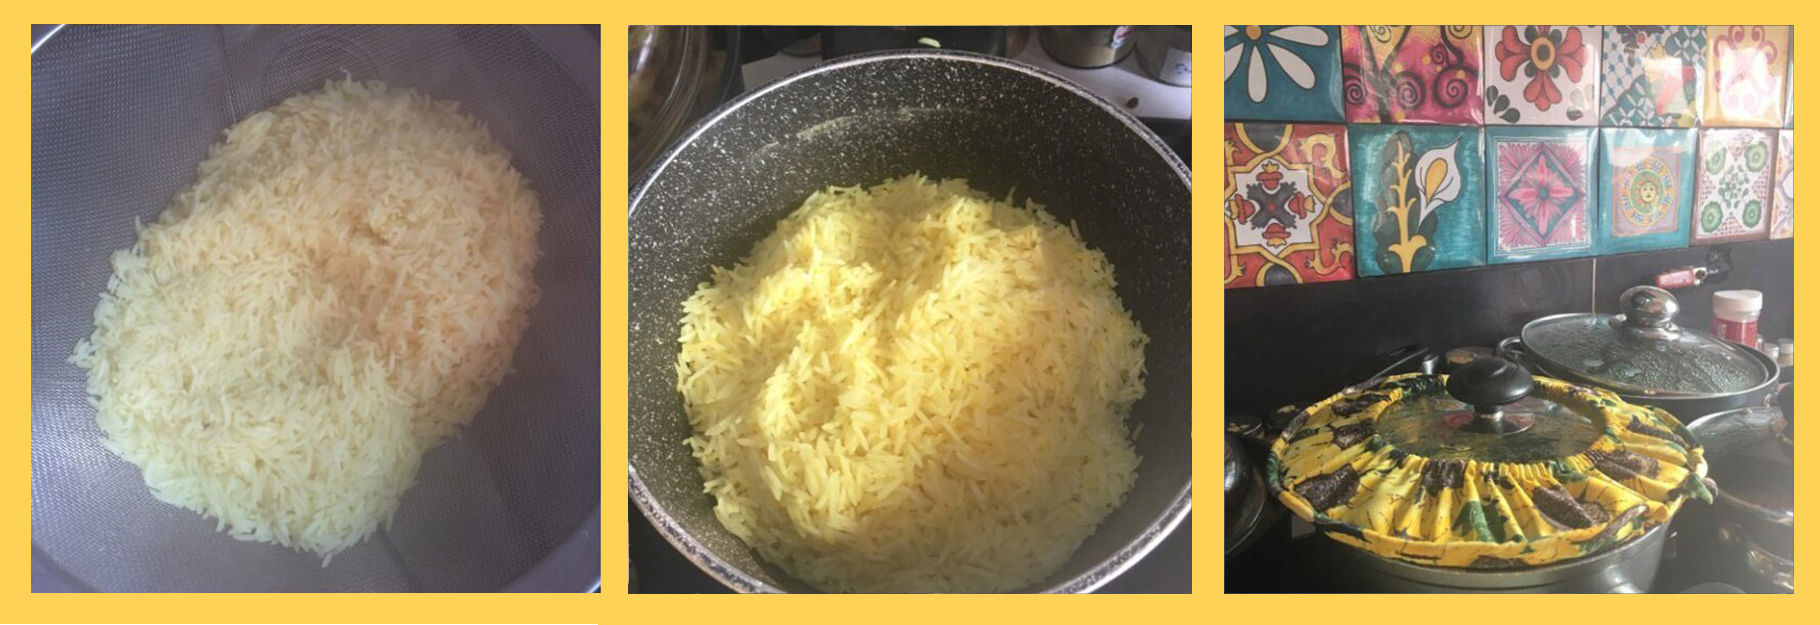 spiced rice